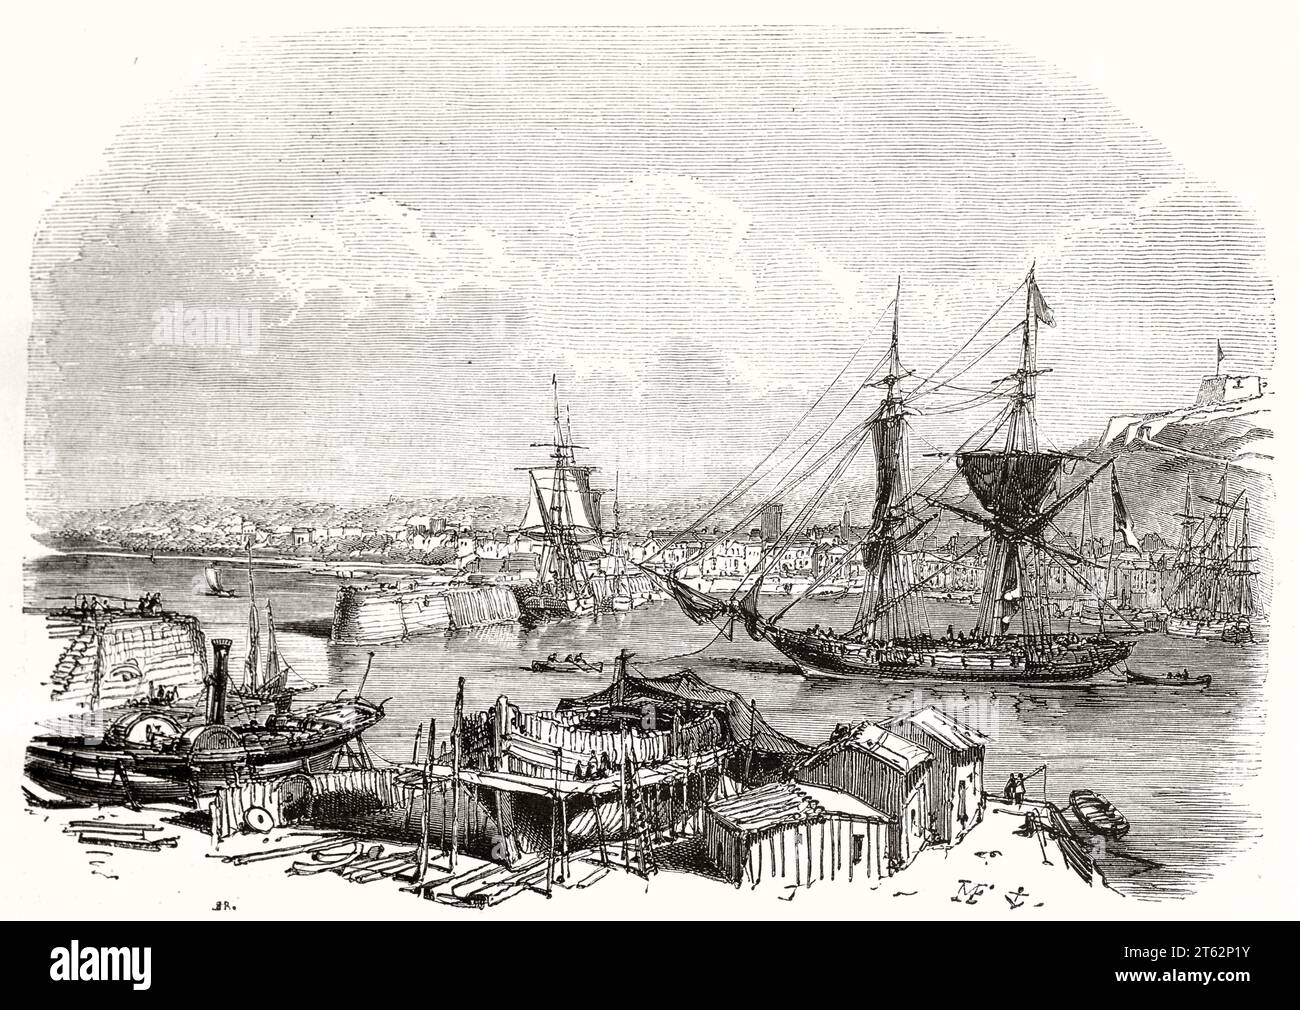 Alte Aussicht auf Saint Helier Seehafen, Jersey, English Channel. Von Morel-Fatio, publ. Auf Magasin Pittoresque, Paris, 1849 Stockfoto